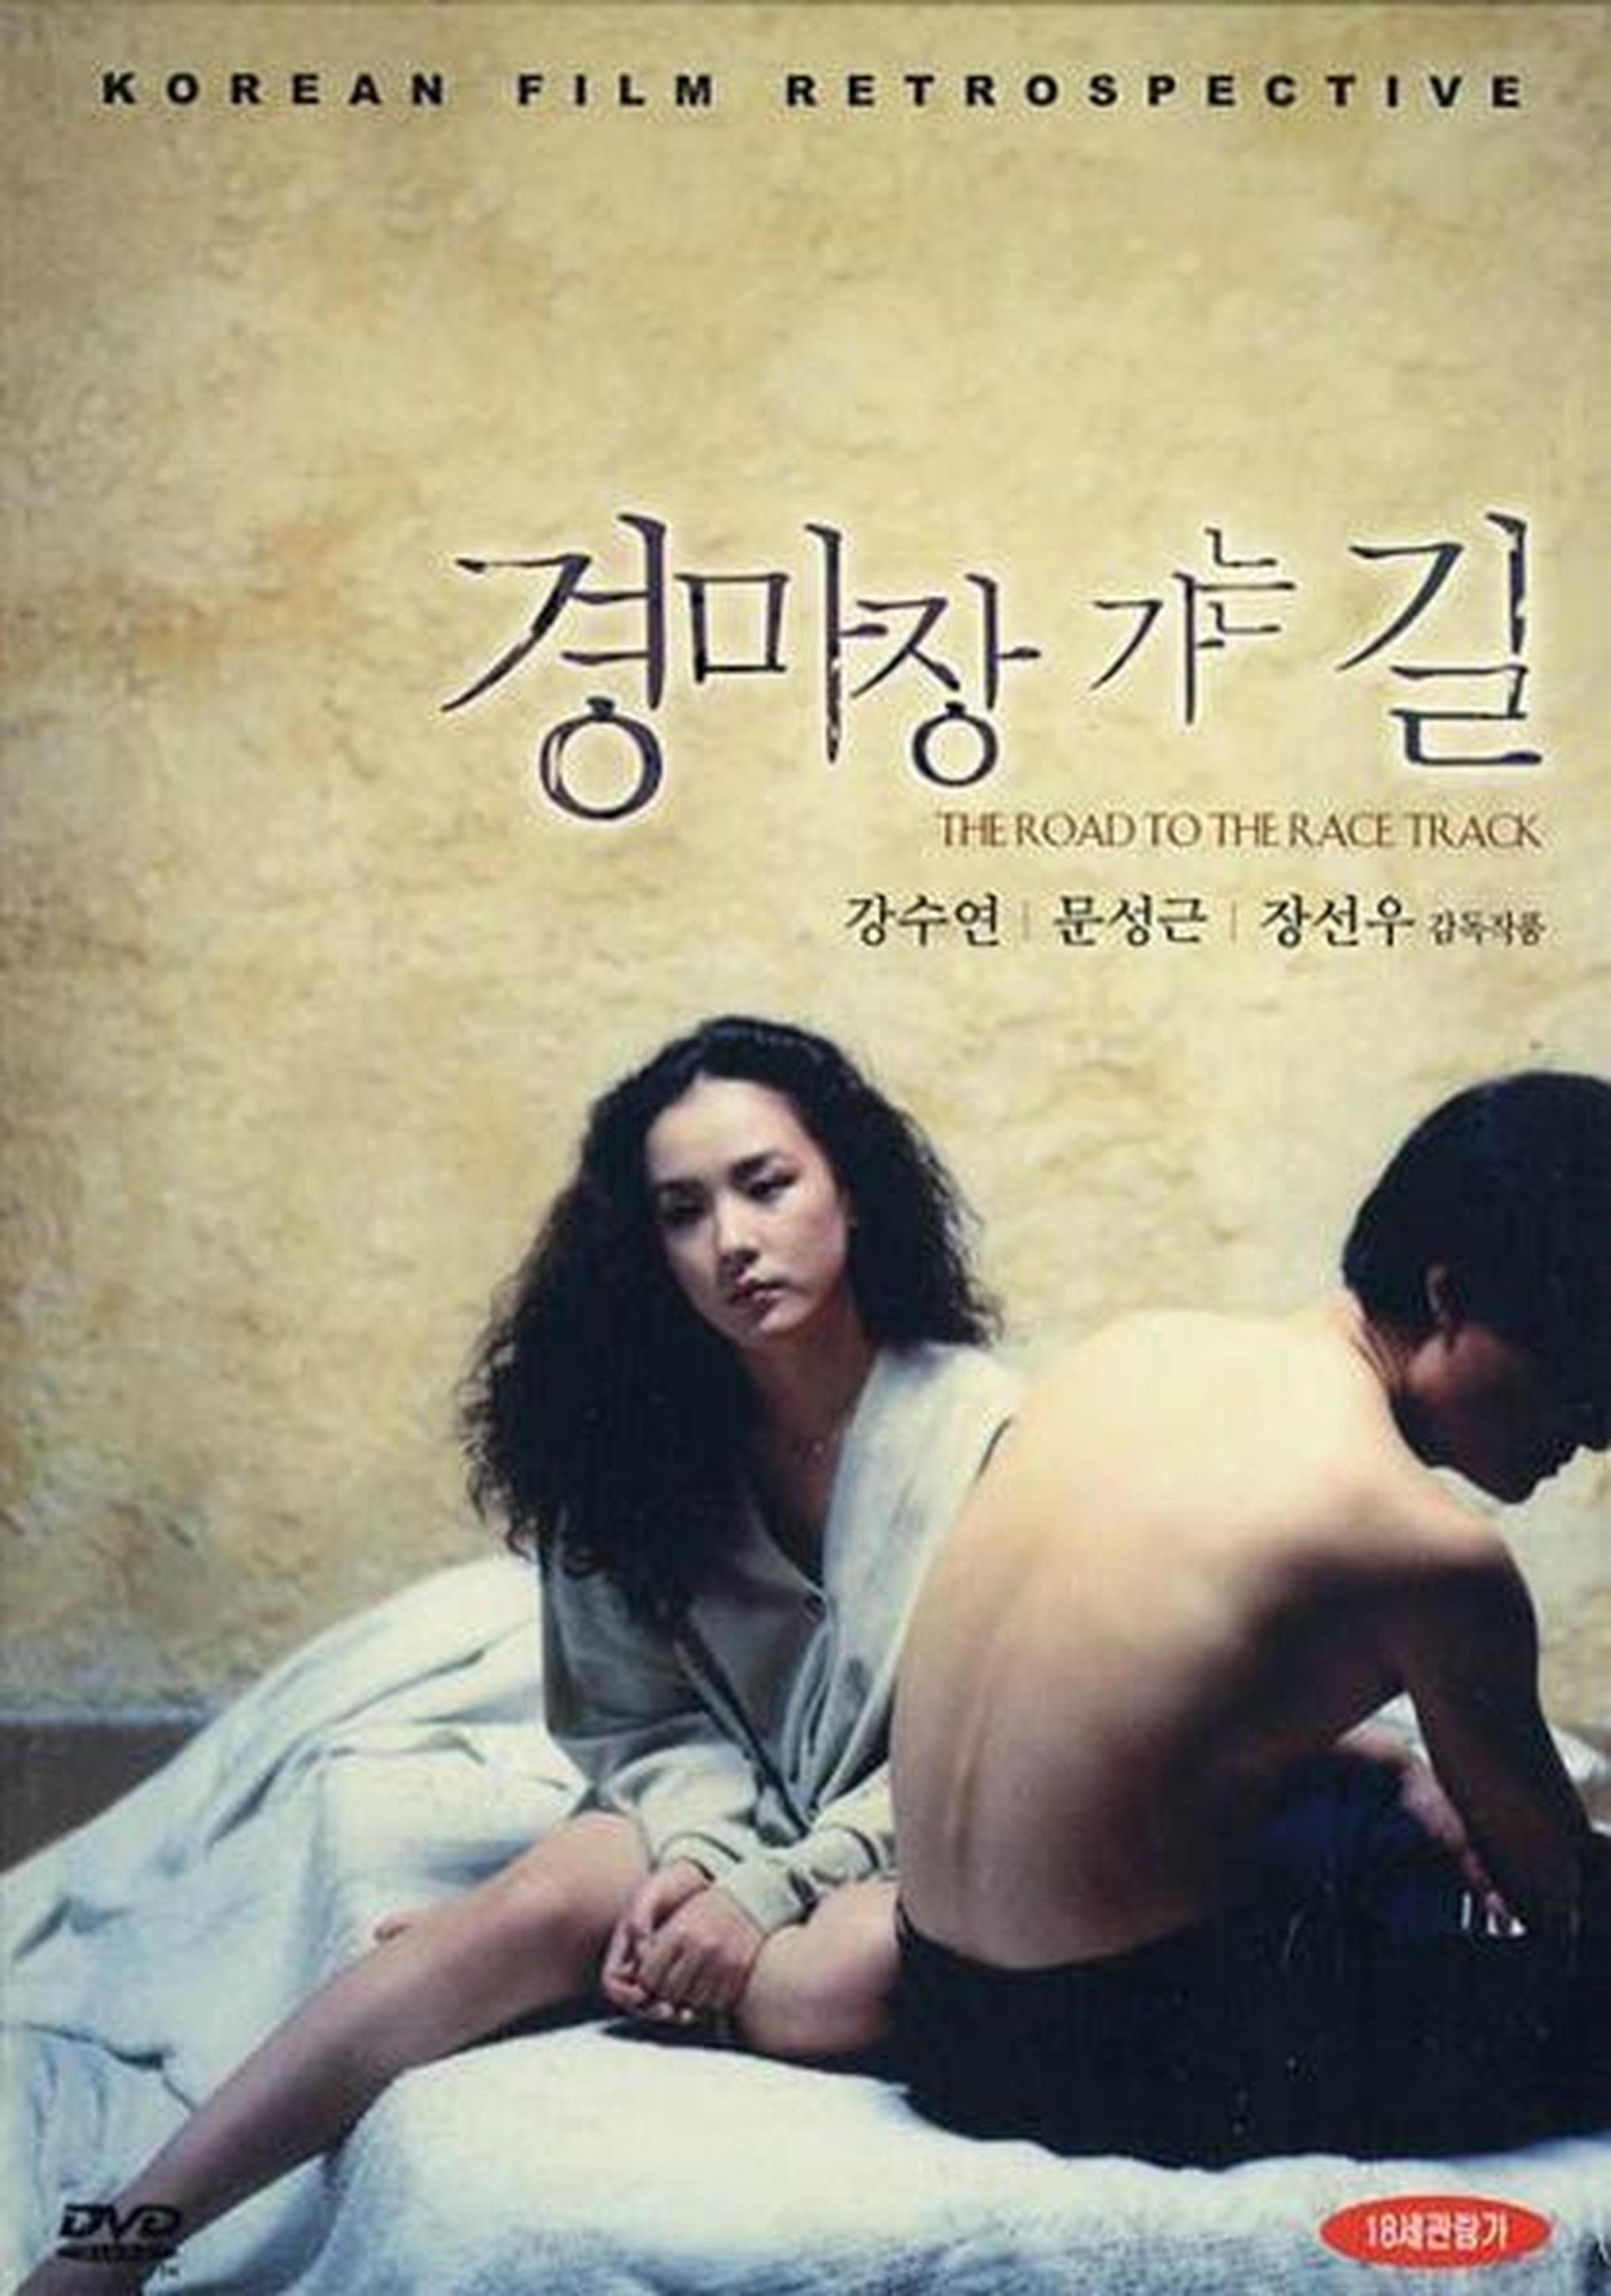 【1990-2000】《情场如马场》(1991)导演张善宇。屡现伯格曼时刻，张善宇独孤求败，超前整个韩影史。